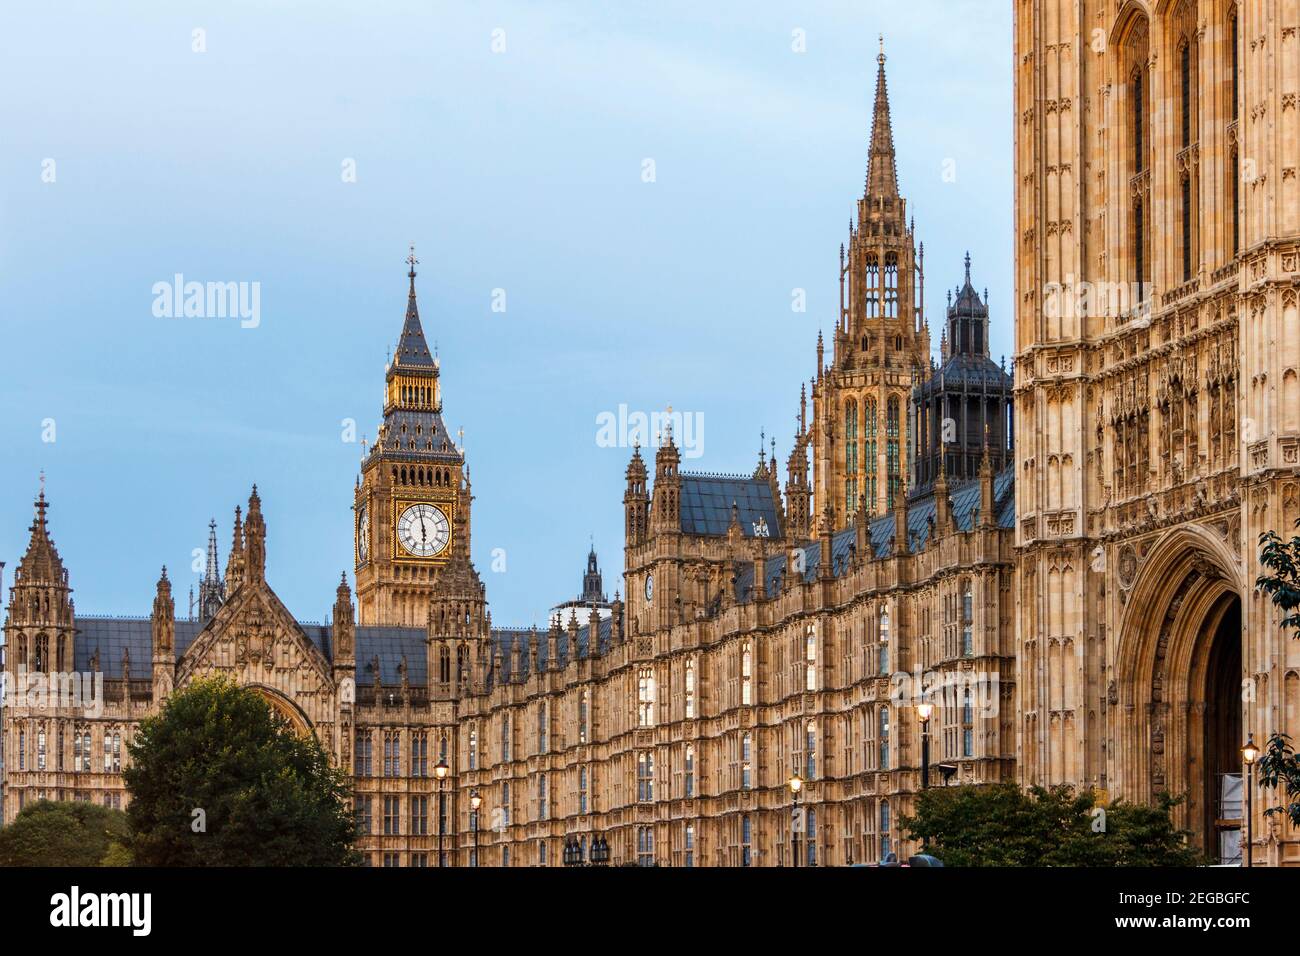 Der Palast von Westminster (Houses of Parliament) an einem Herbstabend, der Uhrenturm von Big Ben im Hintergrund, London, Großbritannien Stockfoto